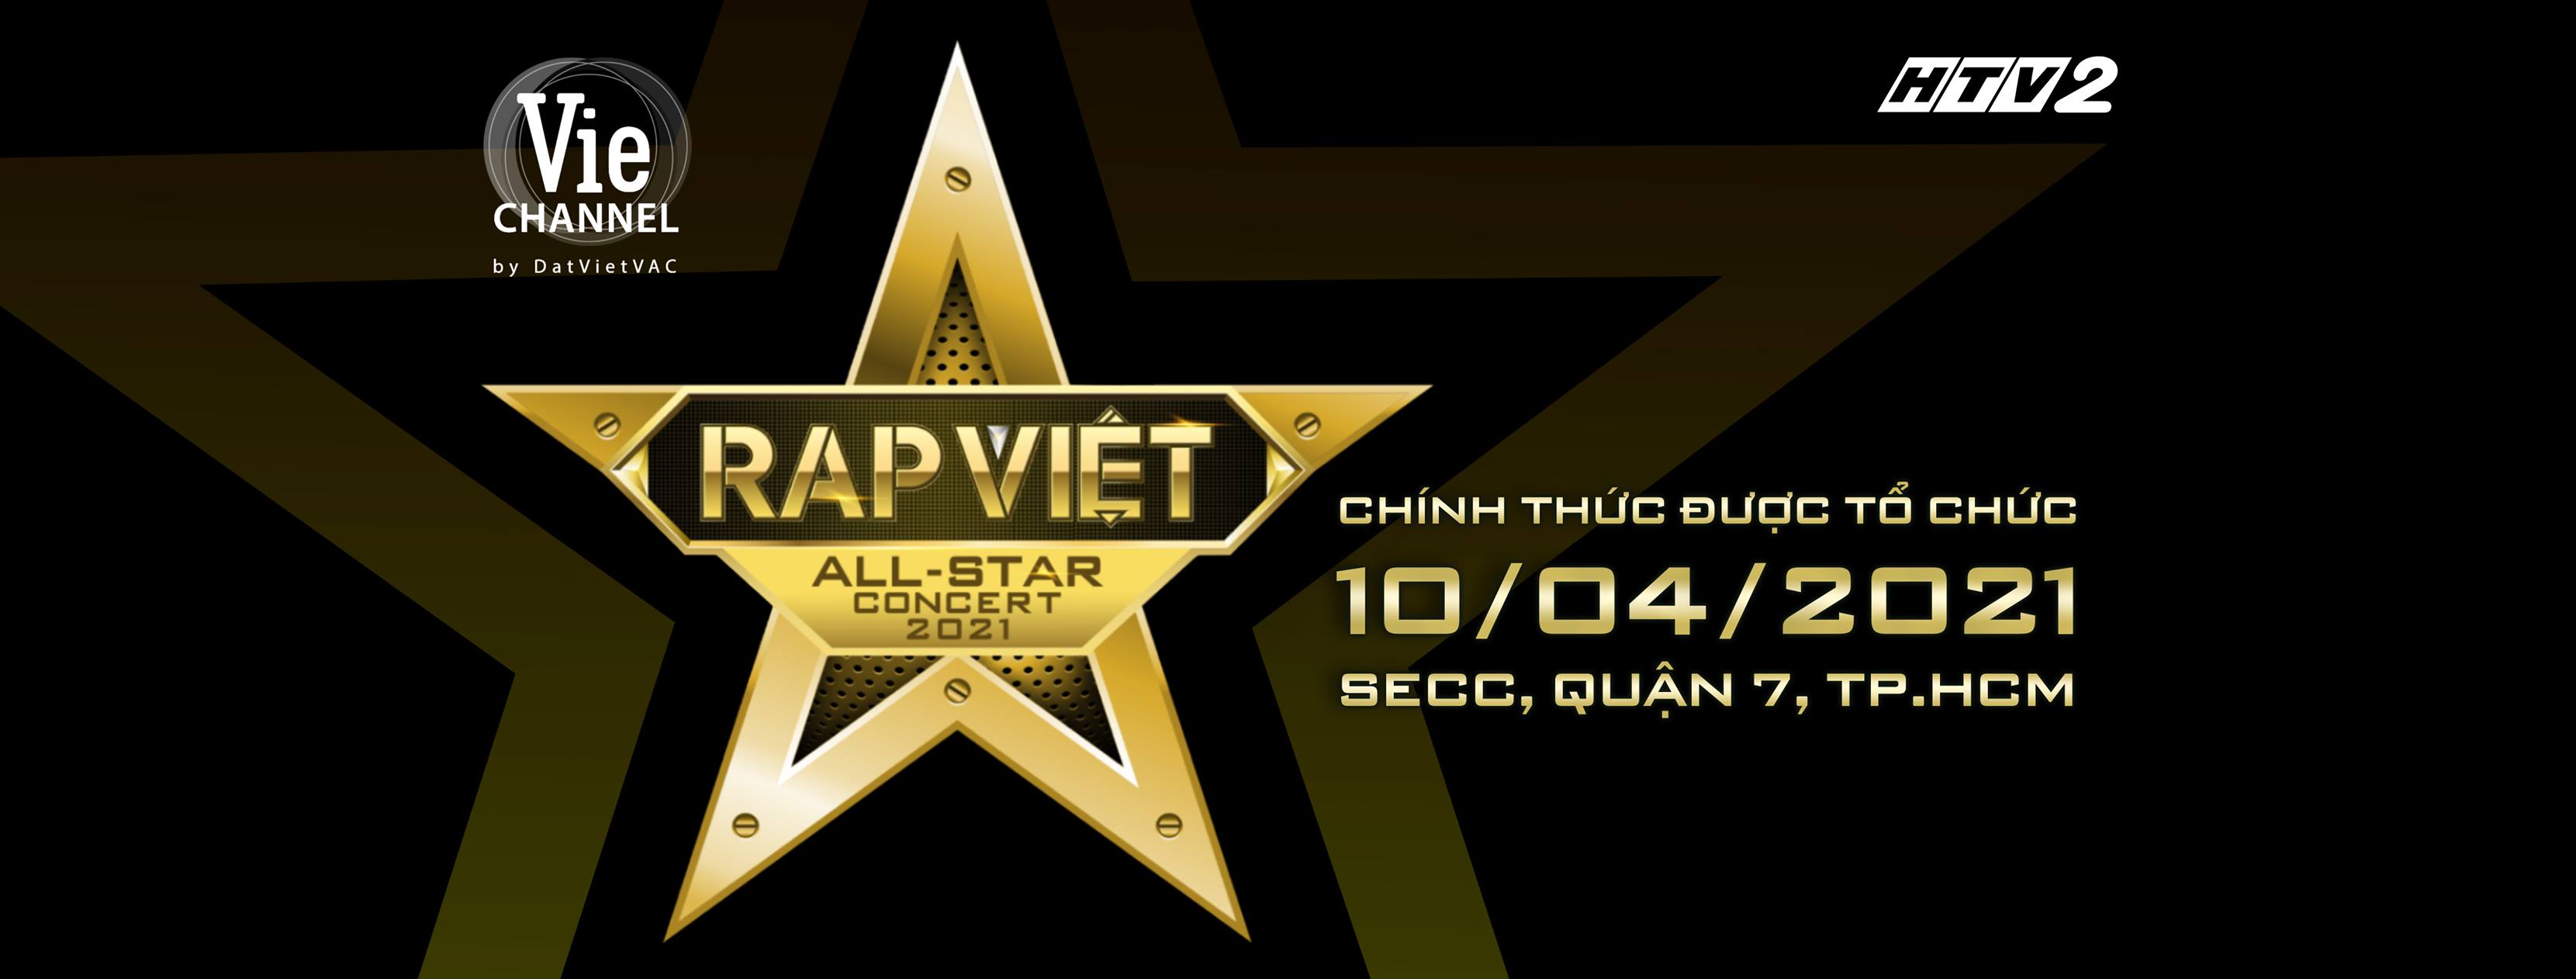 Sau lần hoãn lại, Live Concert Rap Việt All-Star sẽ được tổ chức vào ngày 10/04/2021